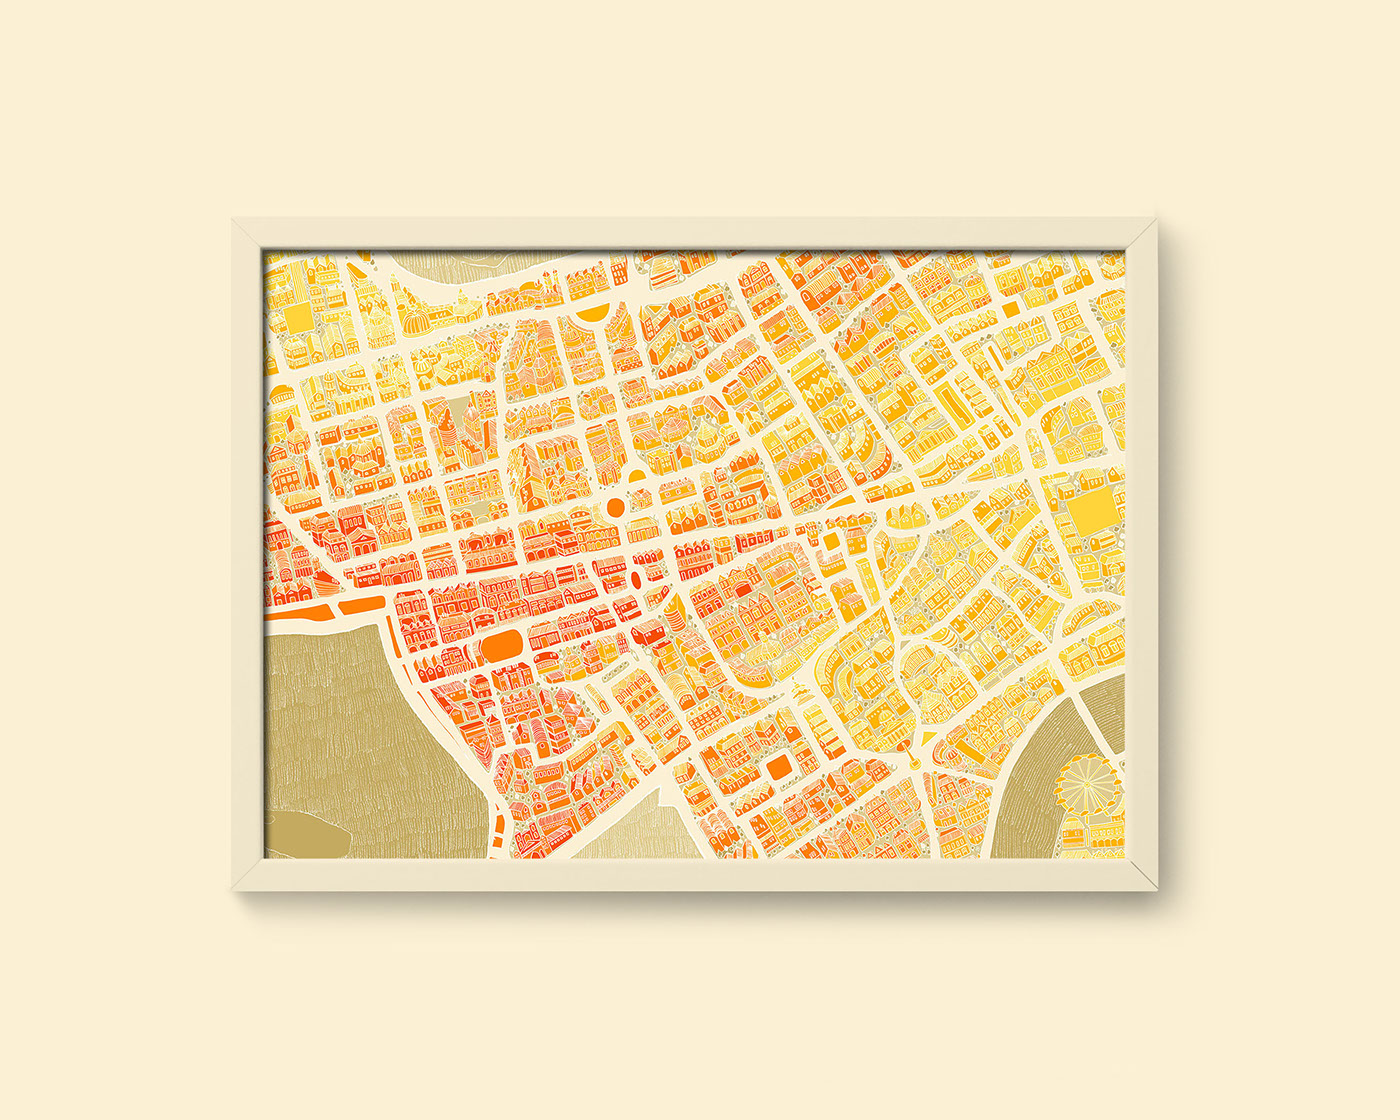 London illustrations city map sovenier Travel handdrawn adobe